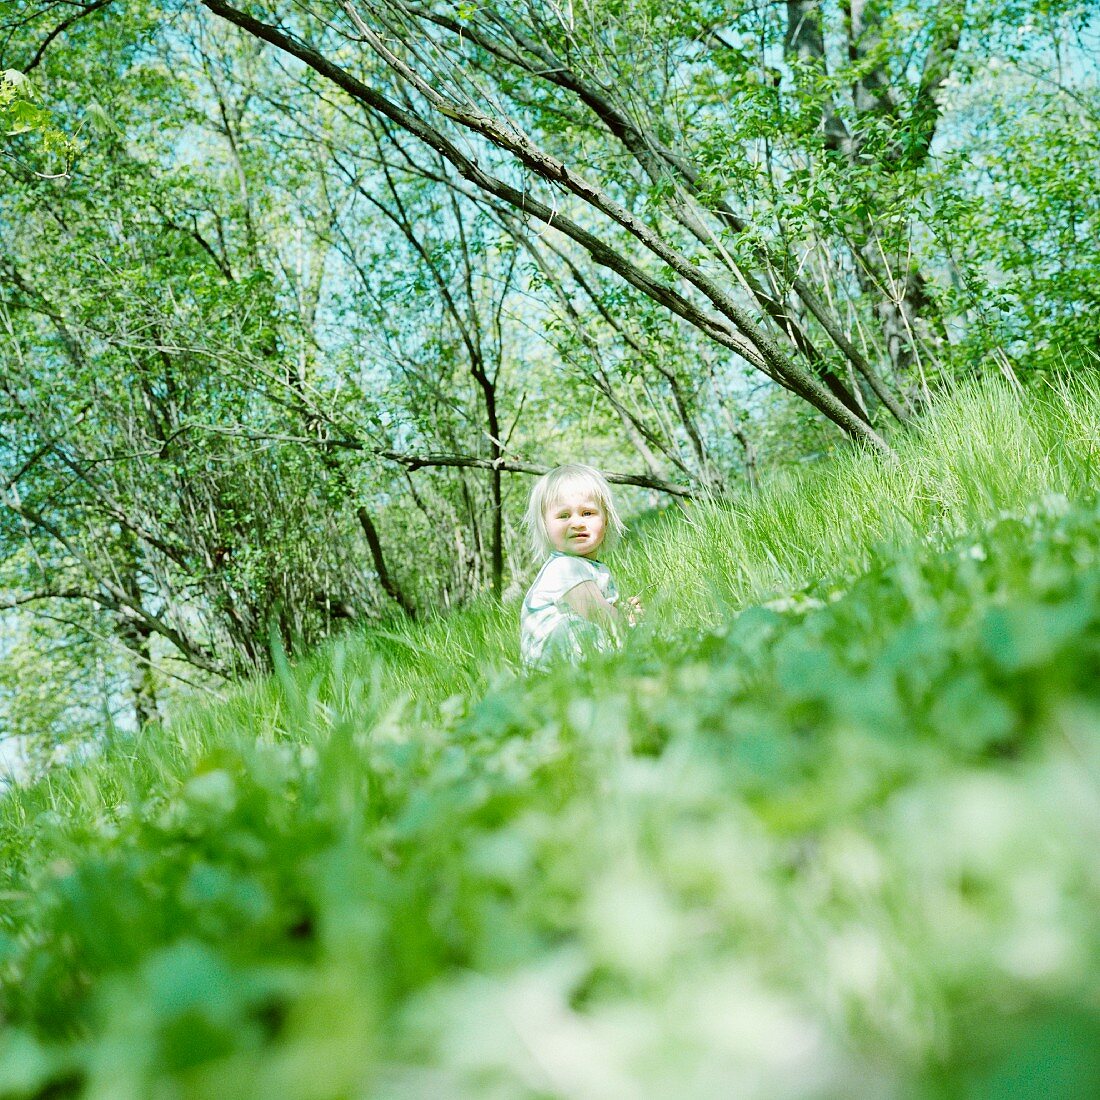 Blonde little girl sitting in grass; trees on tilted horizon